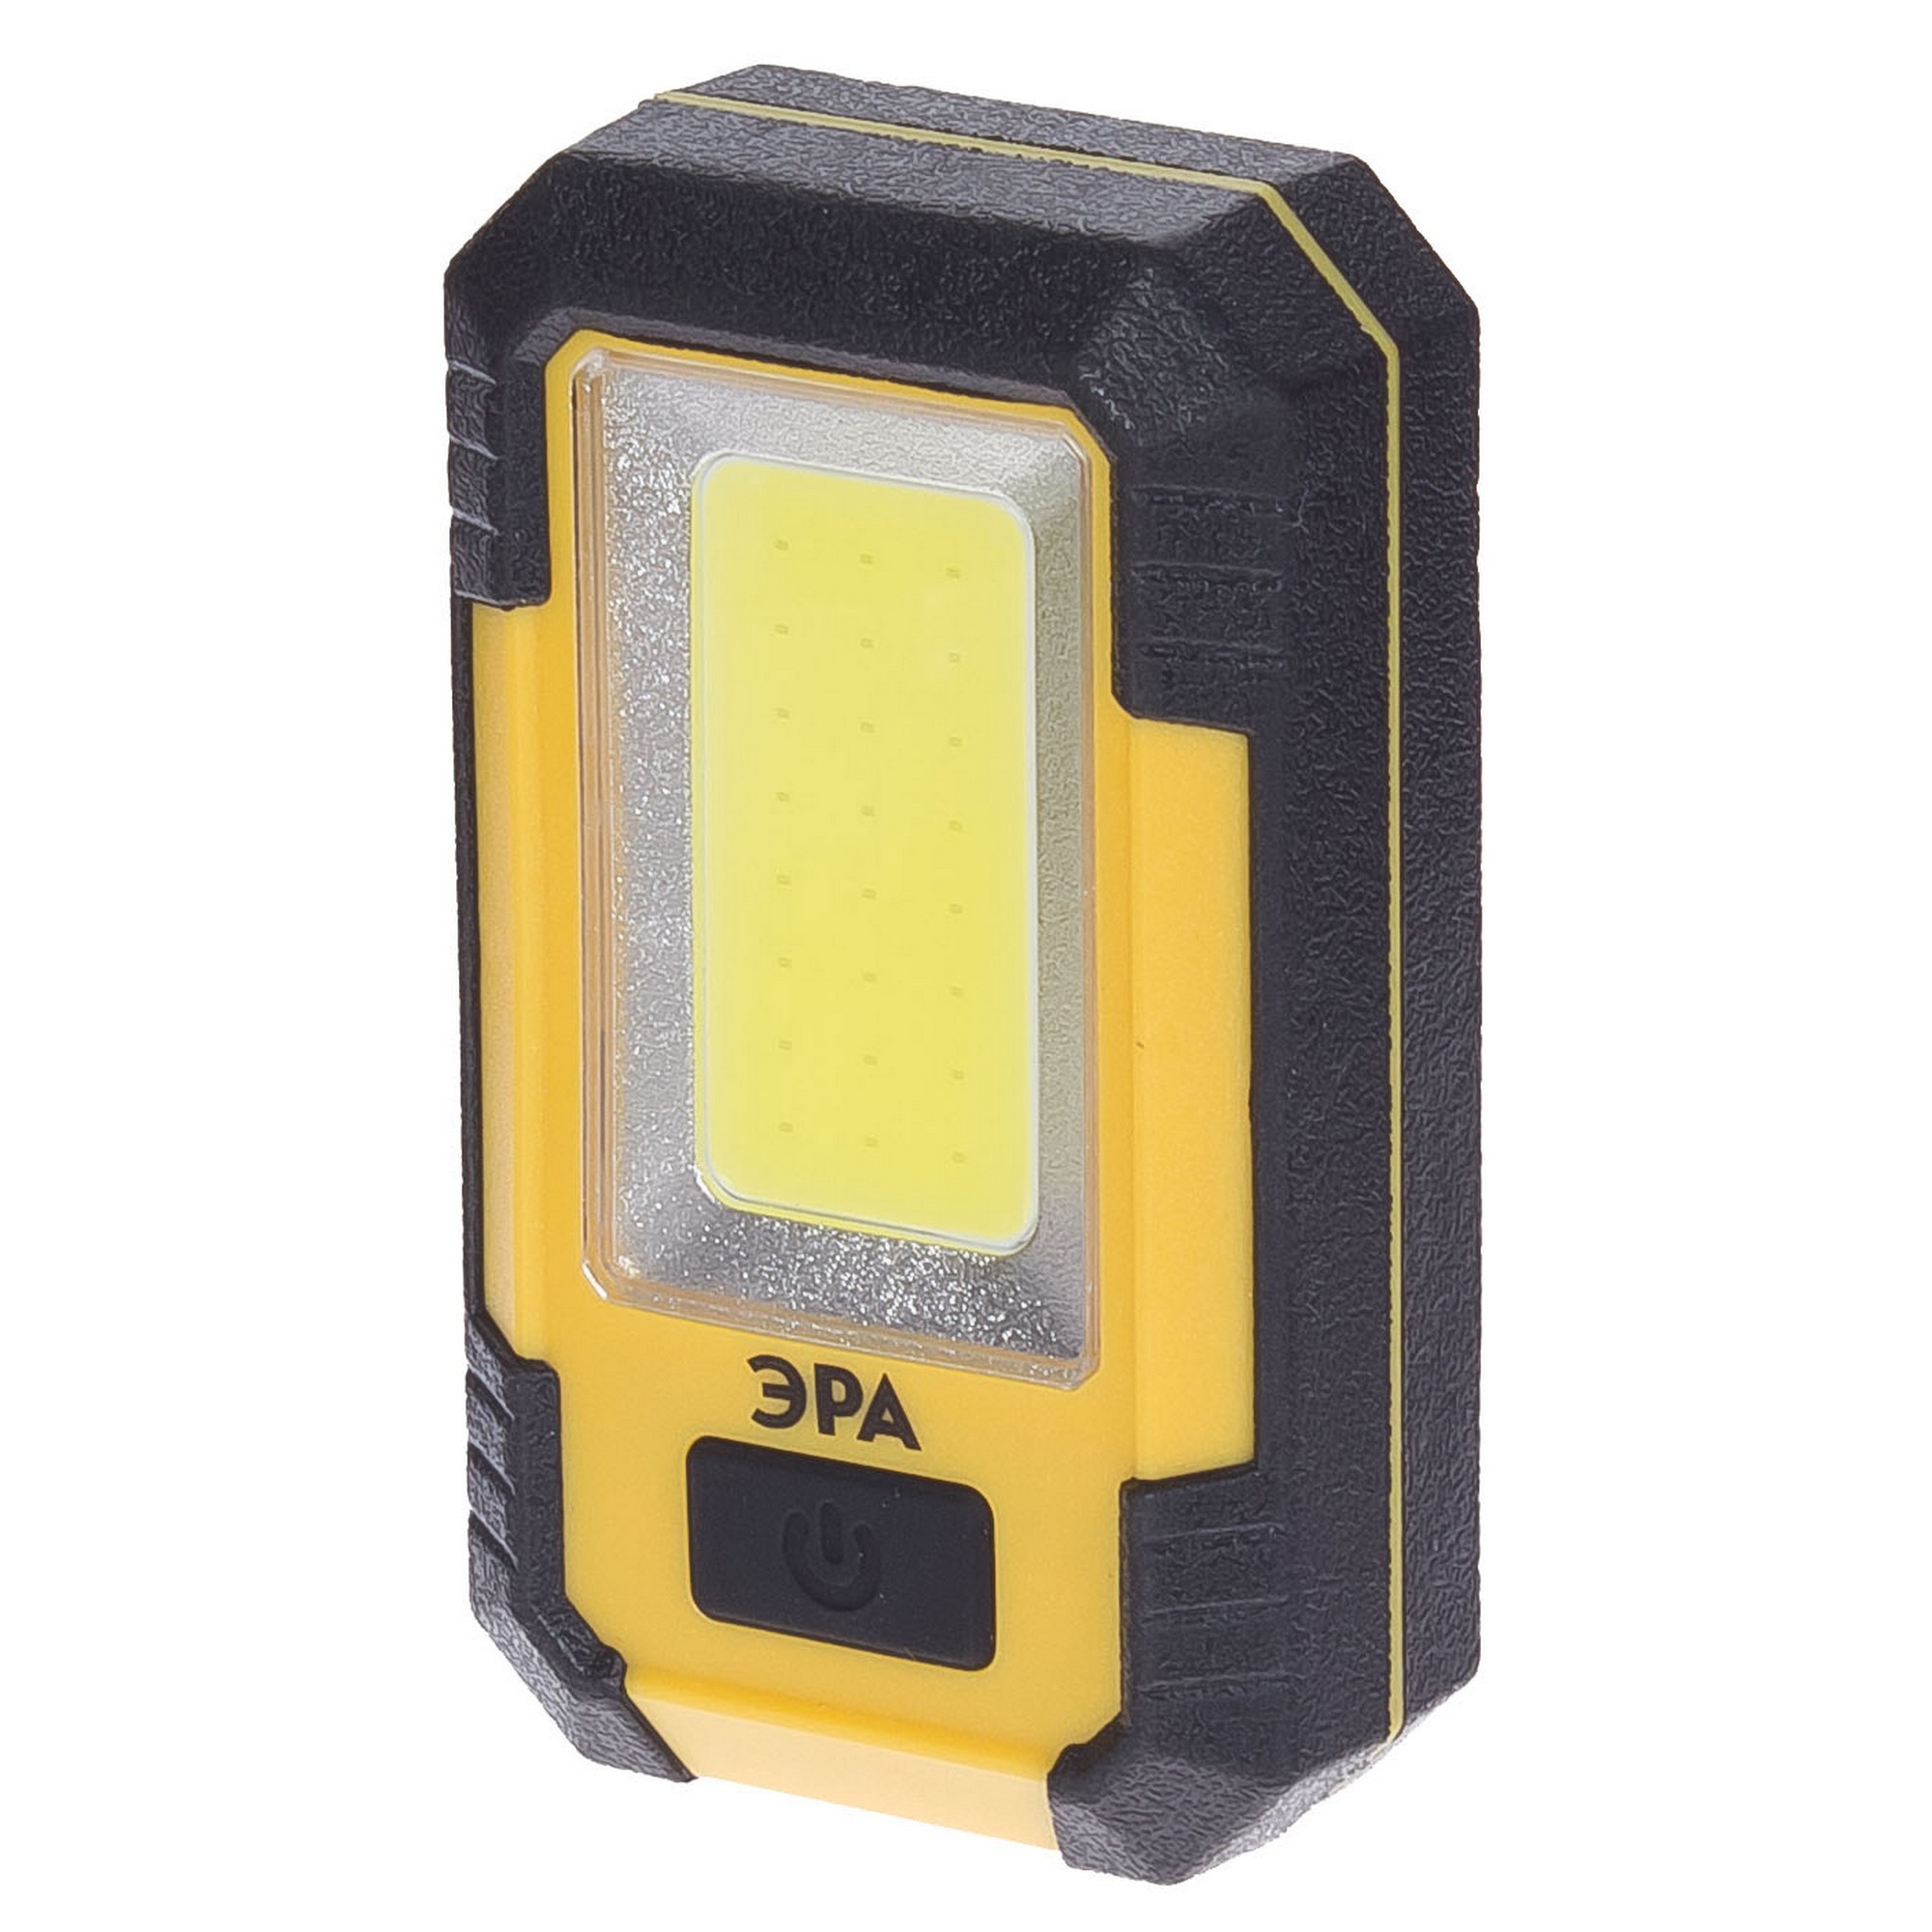  рабочий Эра RA-801 LED 400 Лм  –  по низкой цене в .